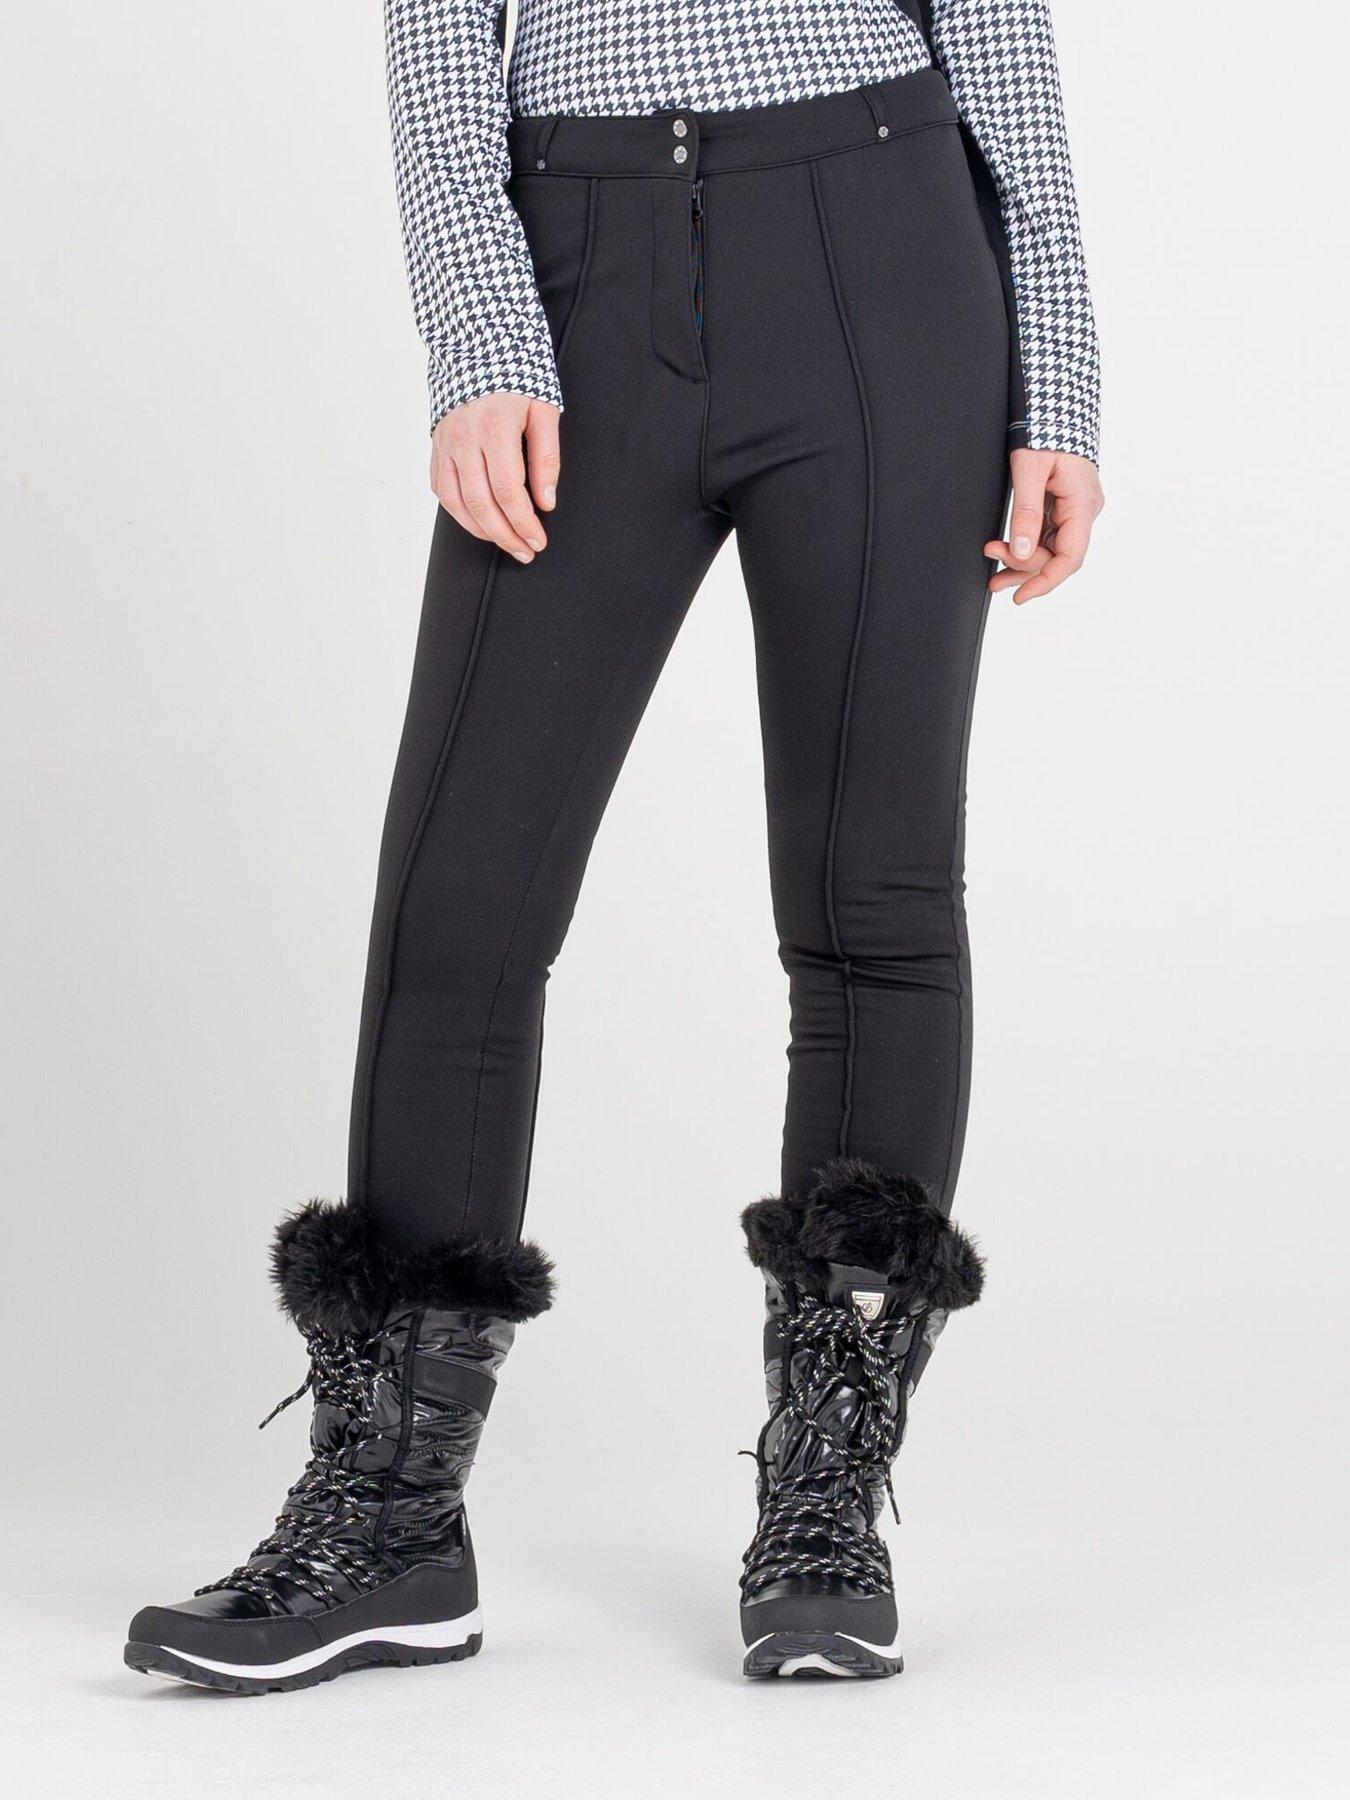  Sleek Full Length Waterproof Ski Pants - Black